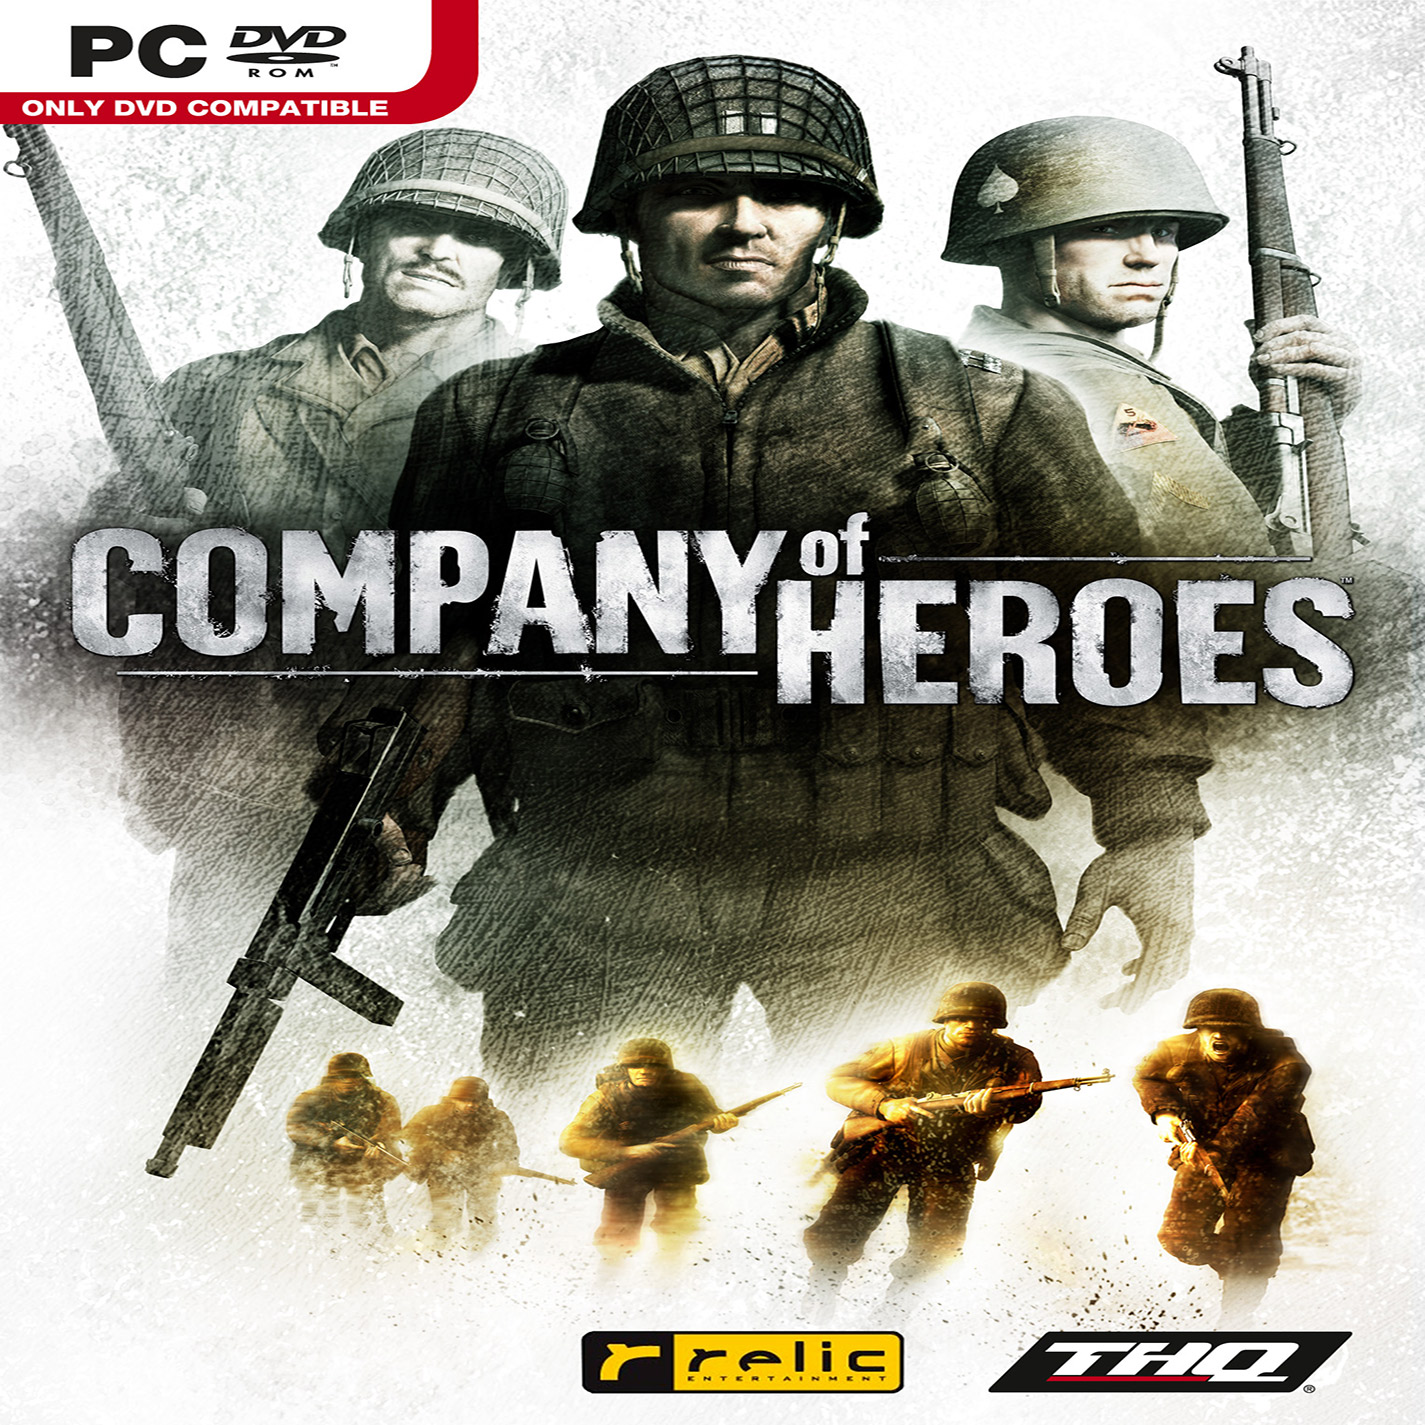 Company of Heroes - přední CD obal